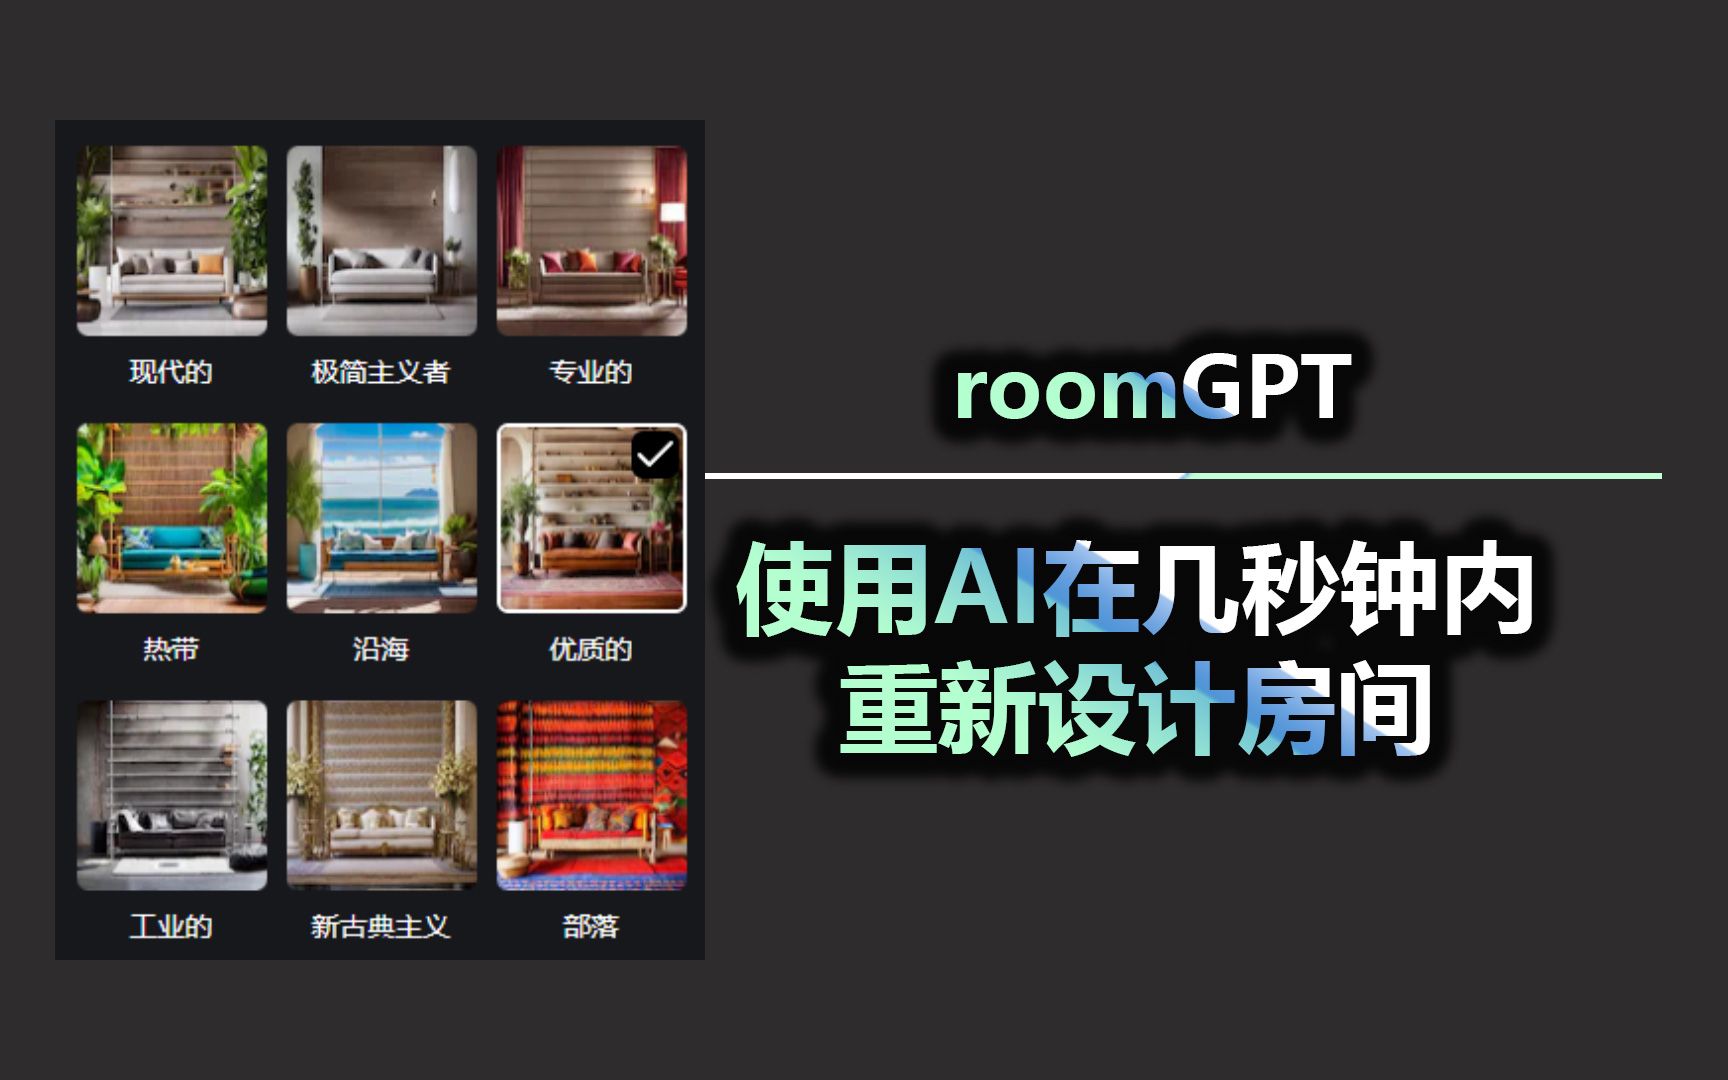 roomGPT 使用AI在几秒钟内重新设计房间